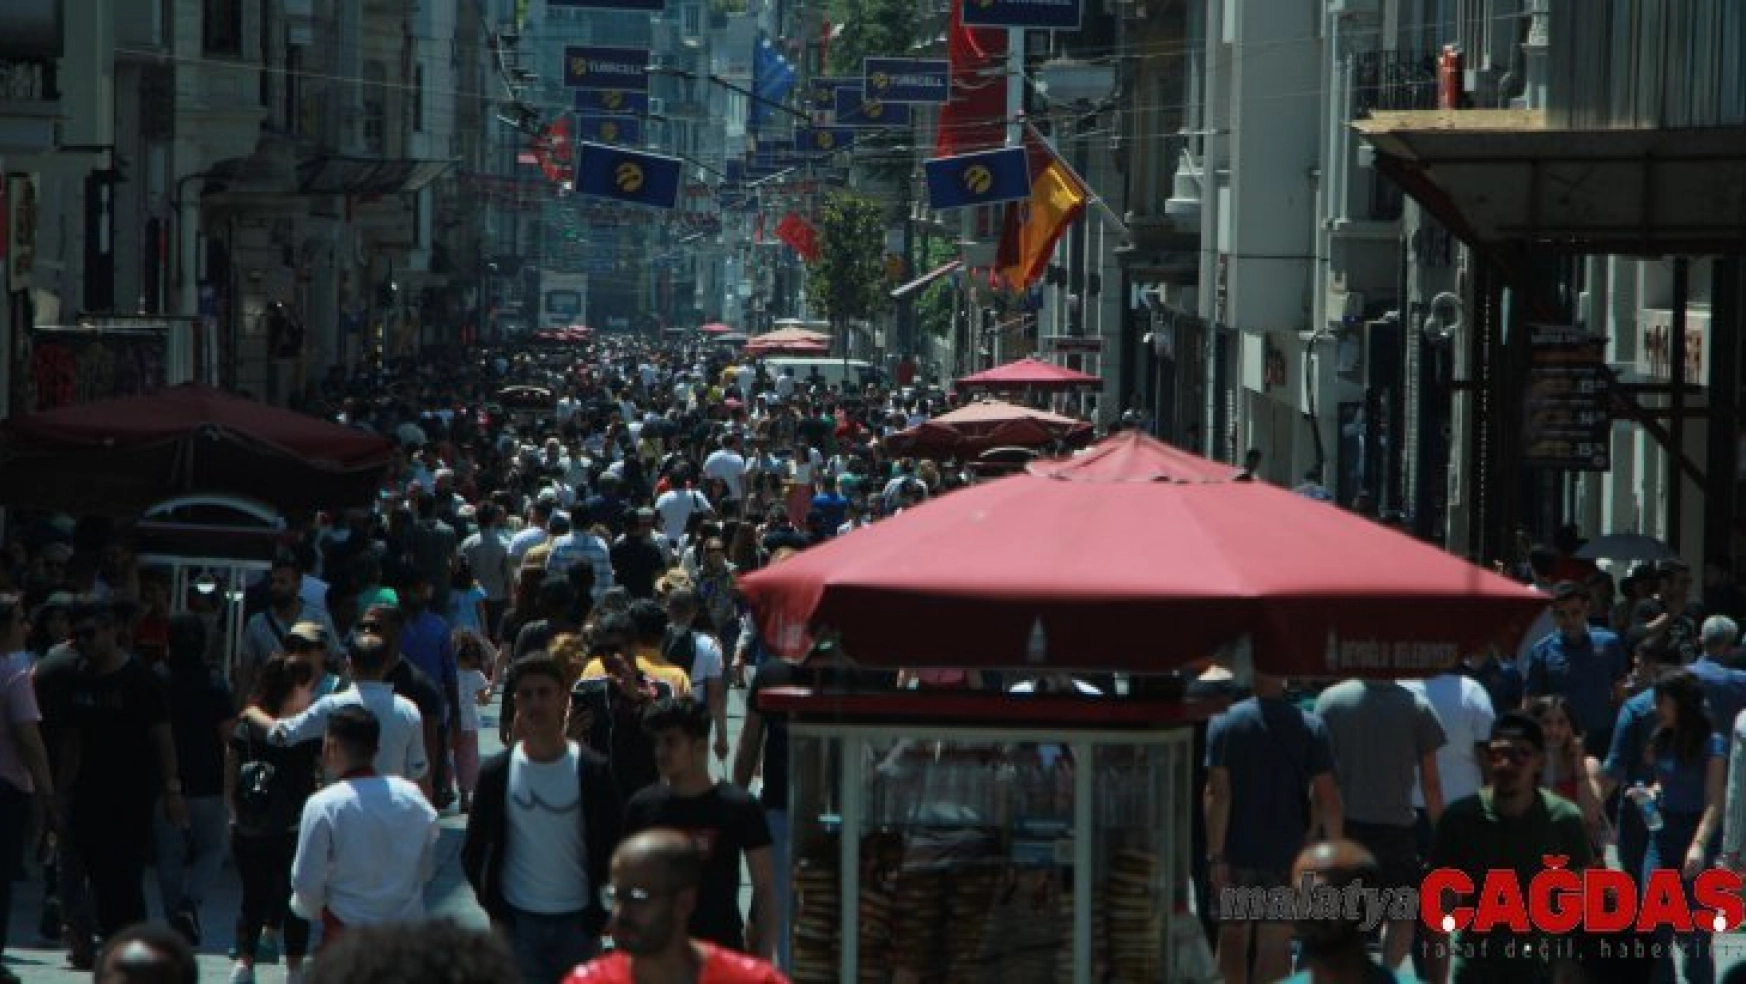 Türkiye'de 2,5 milyon hepatit B'li, 500 bin hepatit C'li hasta var